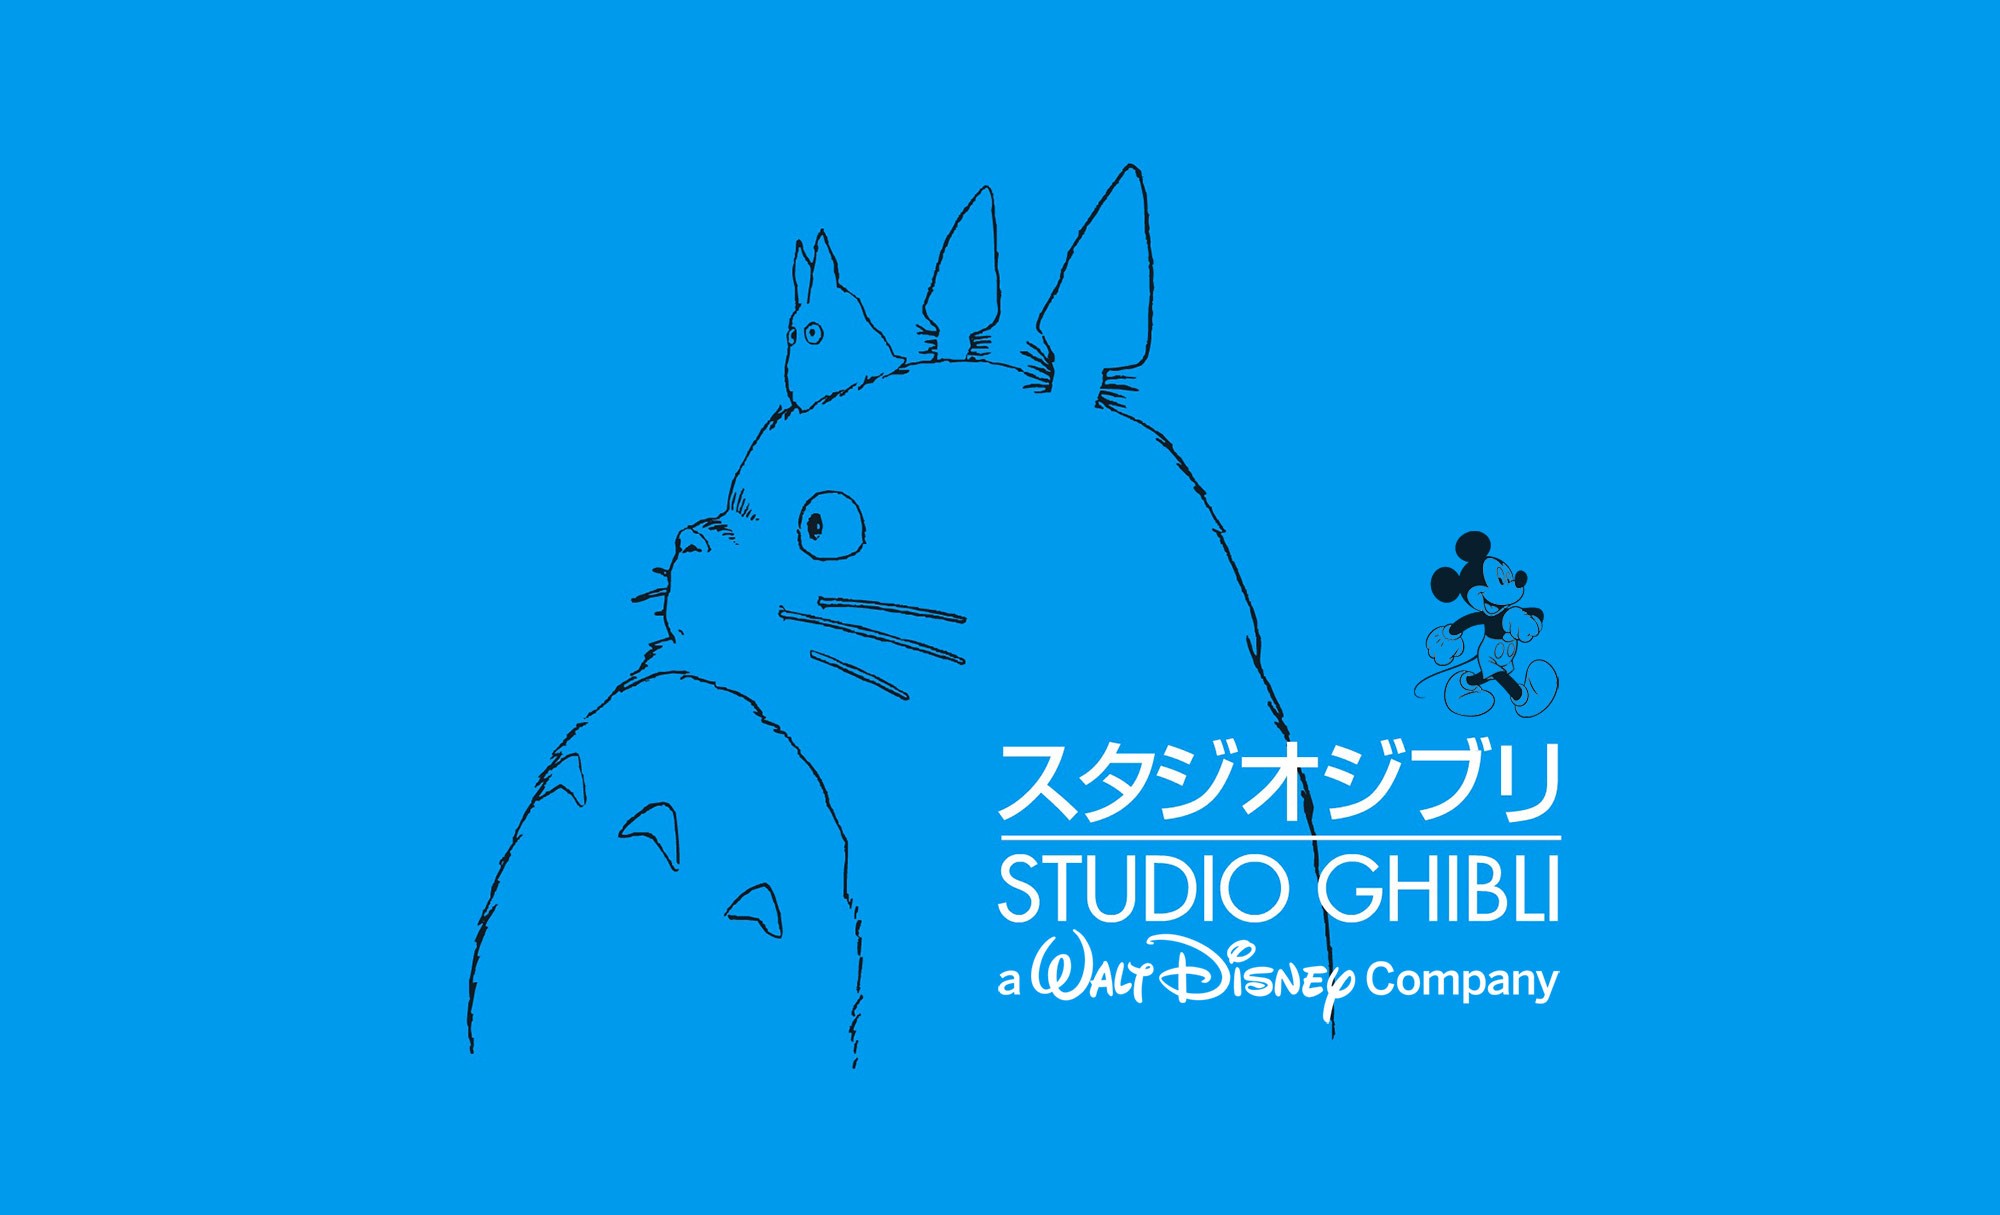 Rachat du Studio Ghibli par Disney : la magie disparaît